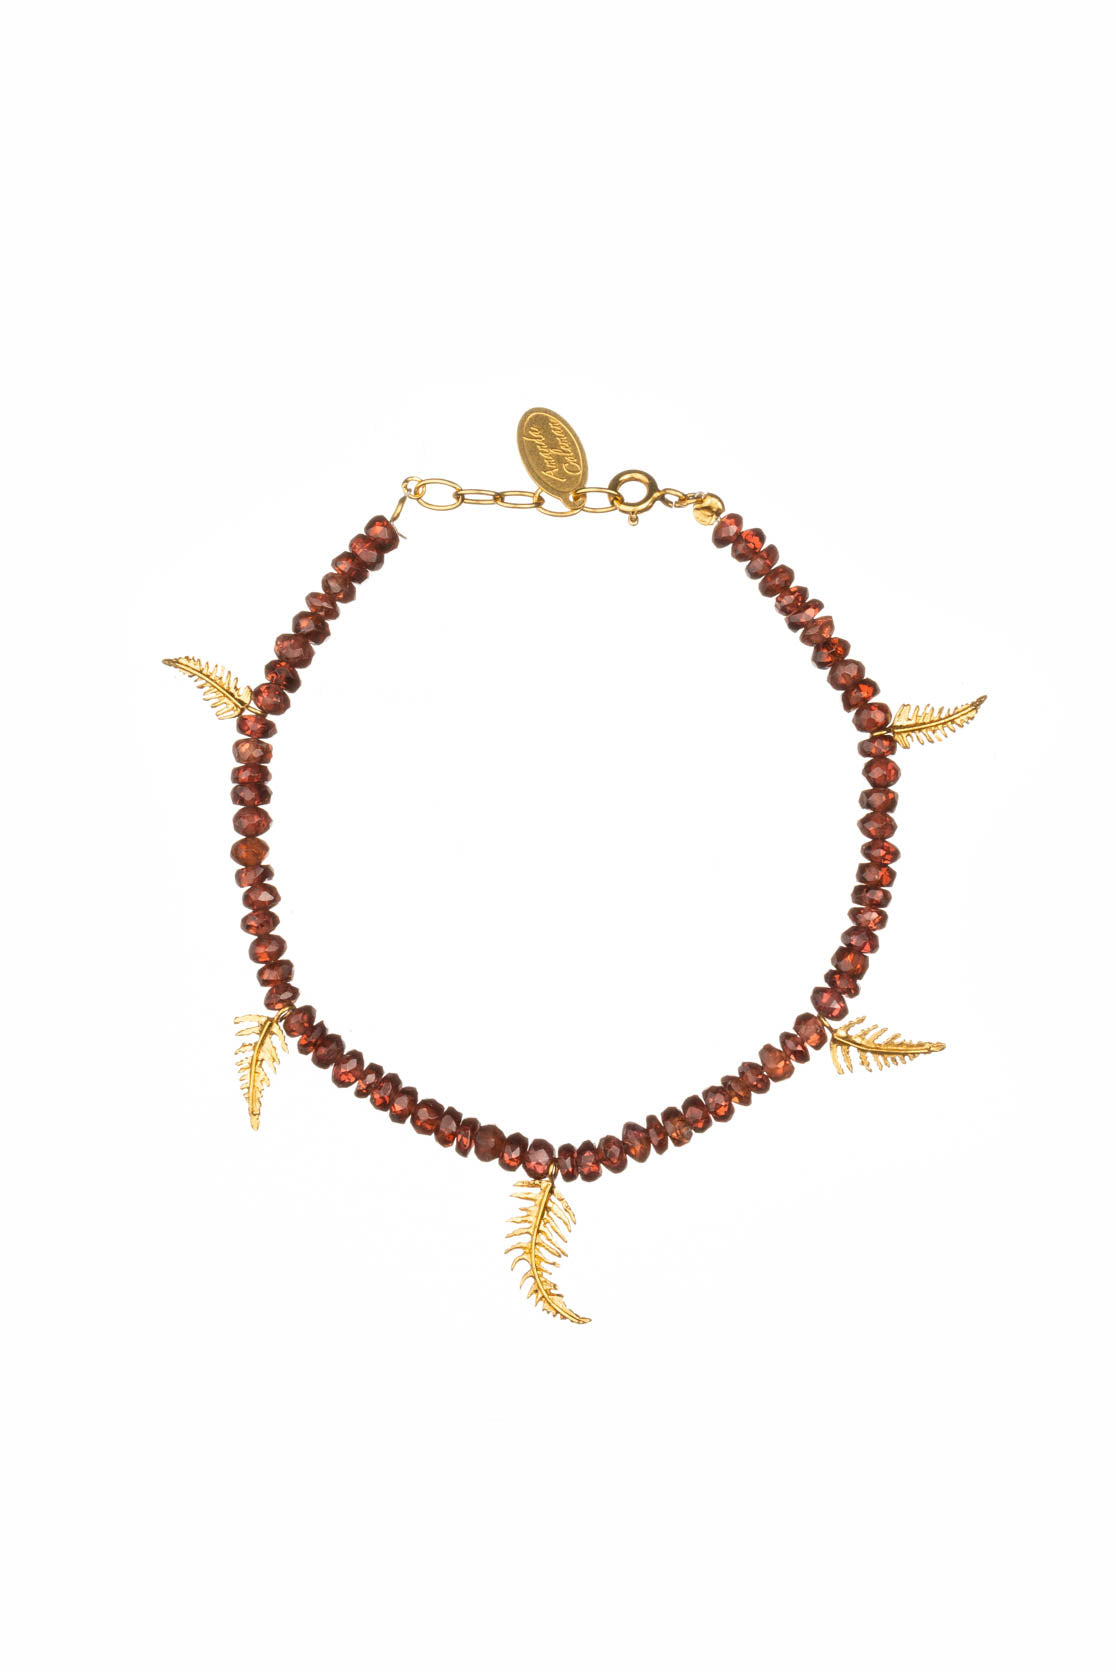 Fern Bracelet With Semi-Precious Beads